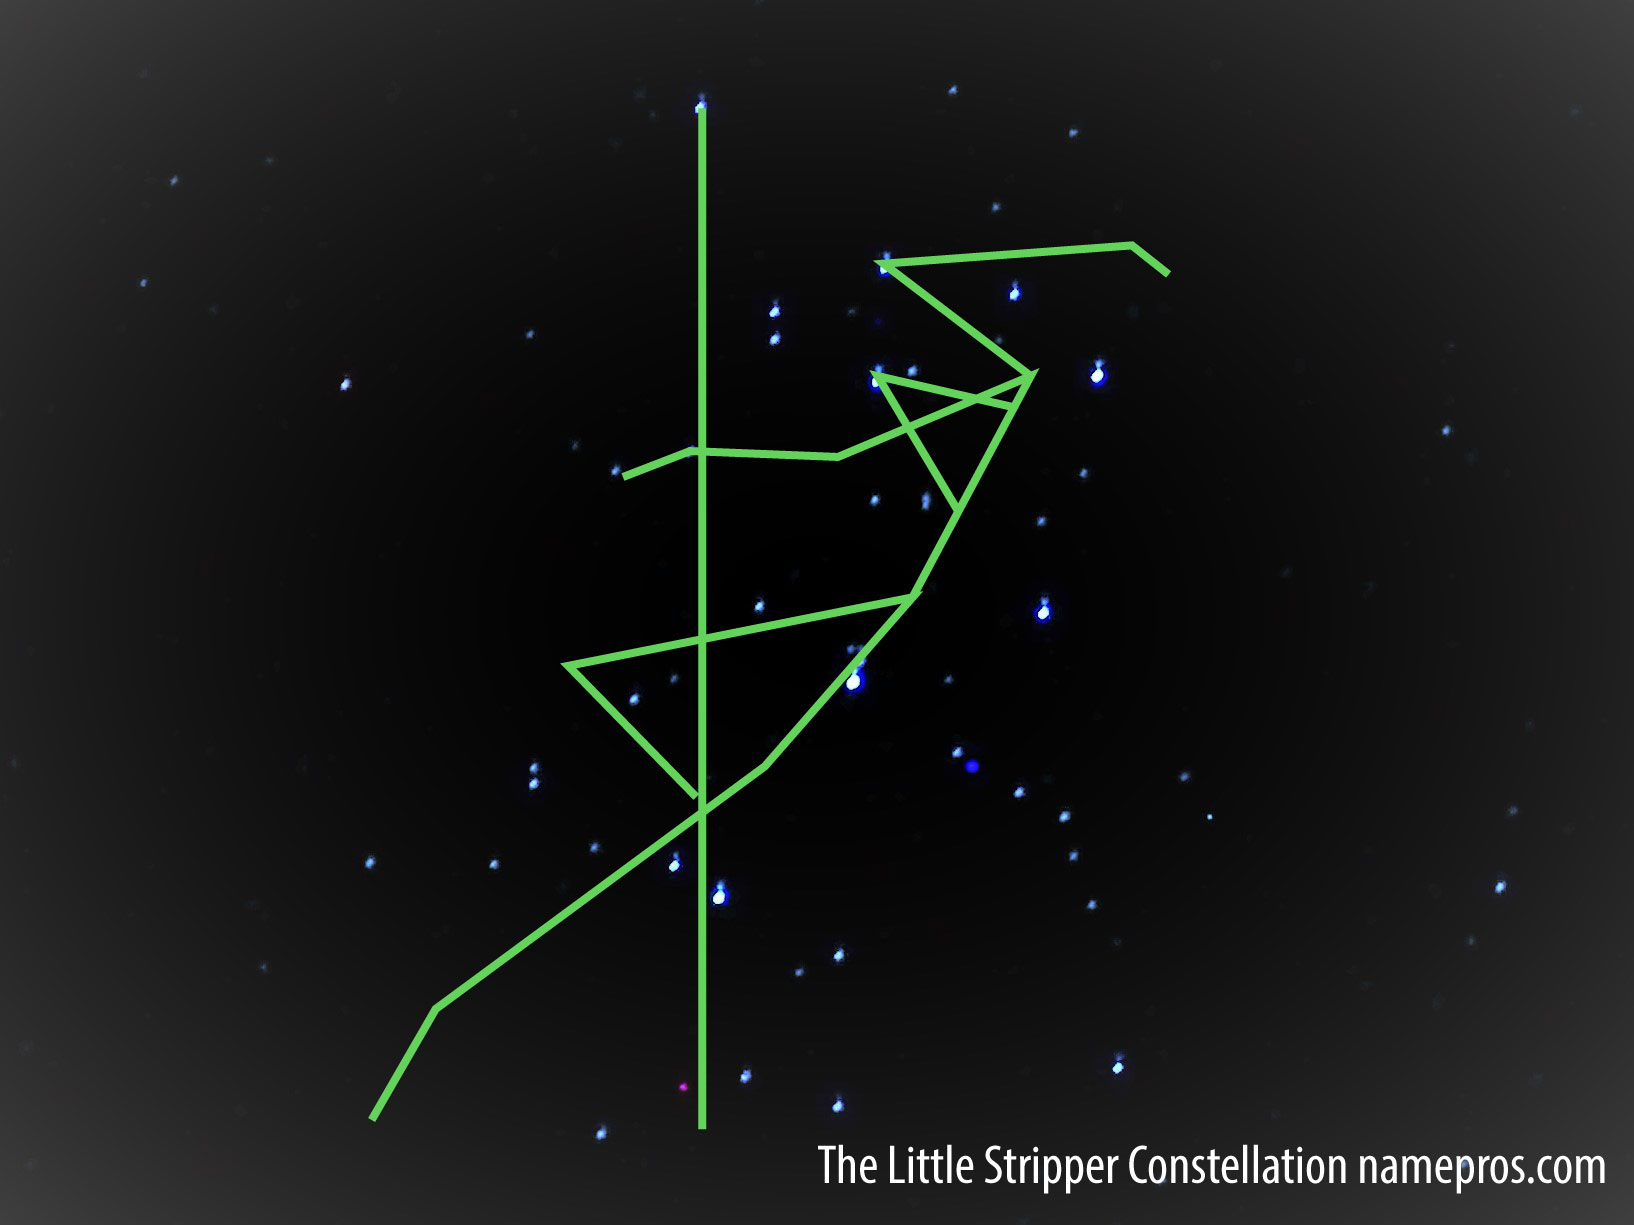 The-Little-Stripper-Constellation.jpg